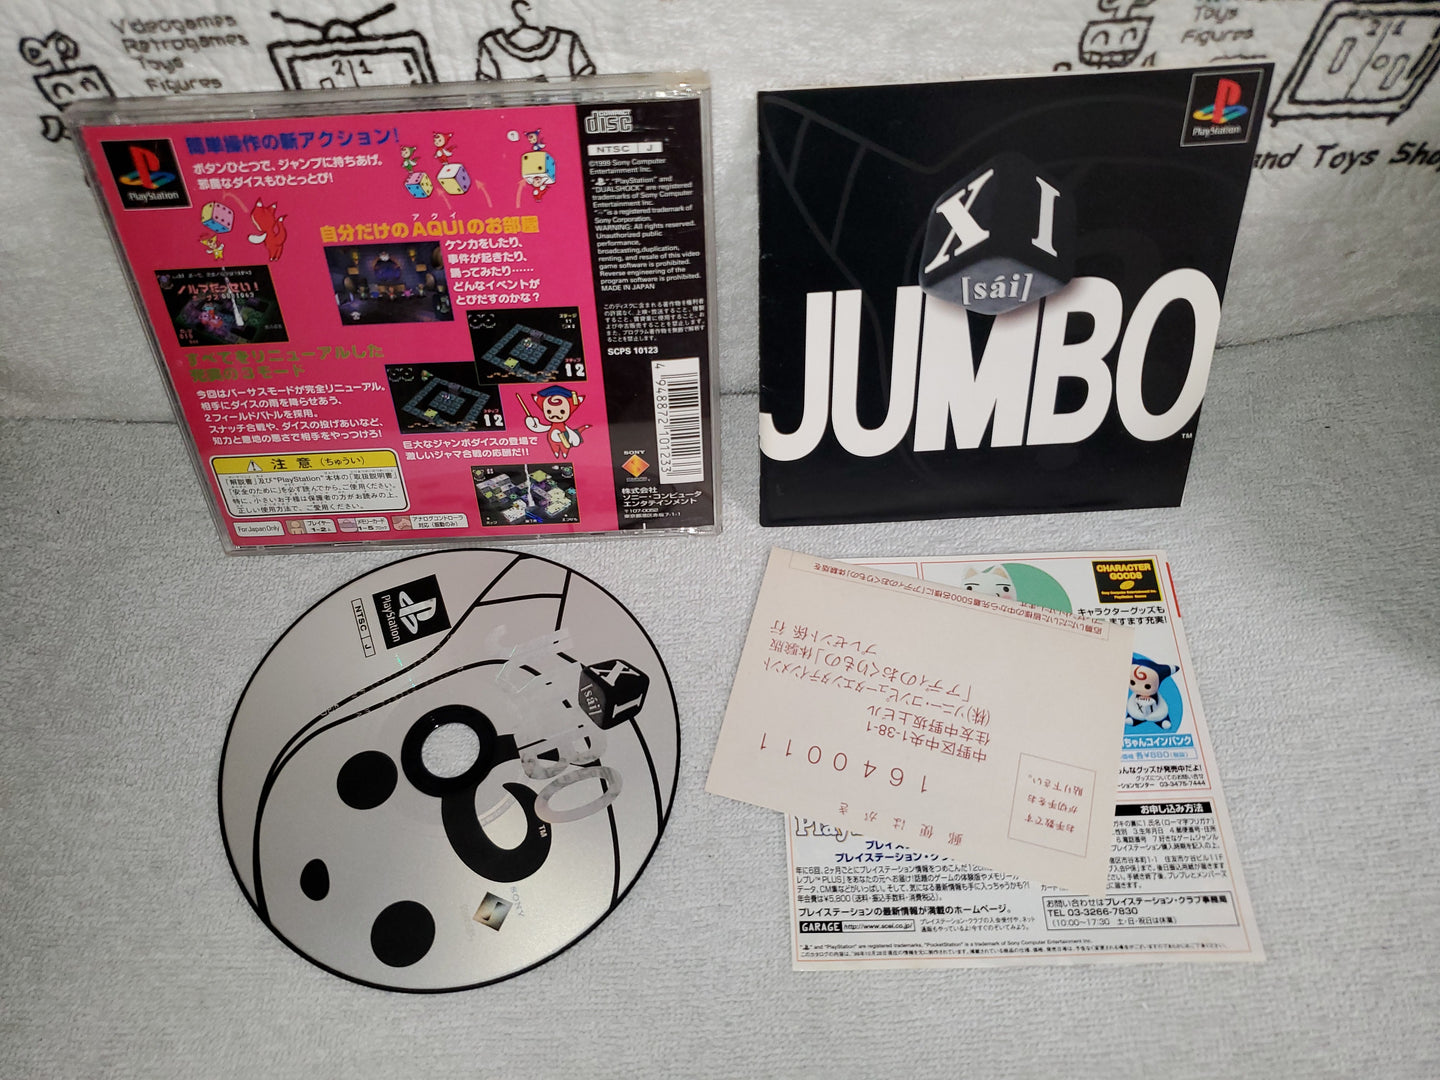 XI jumbo - sony playstation ps1 japan